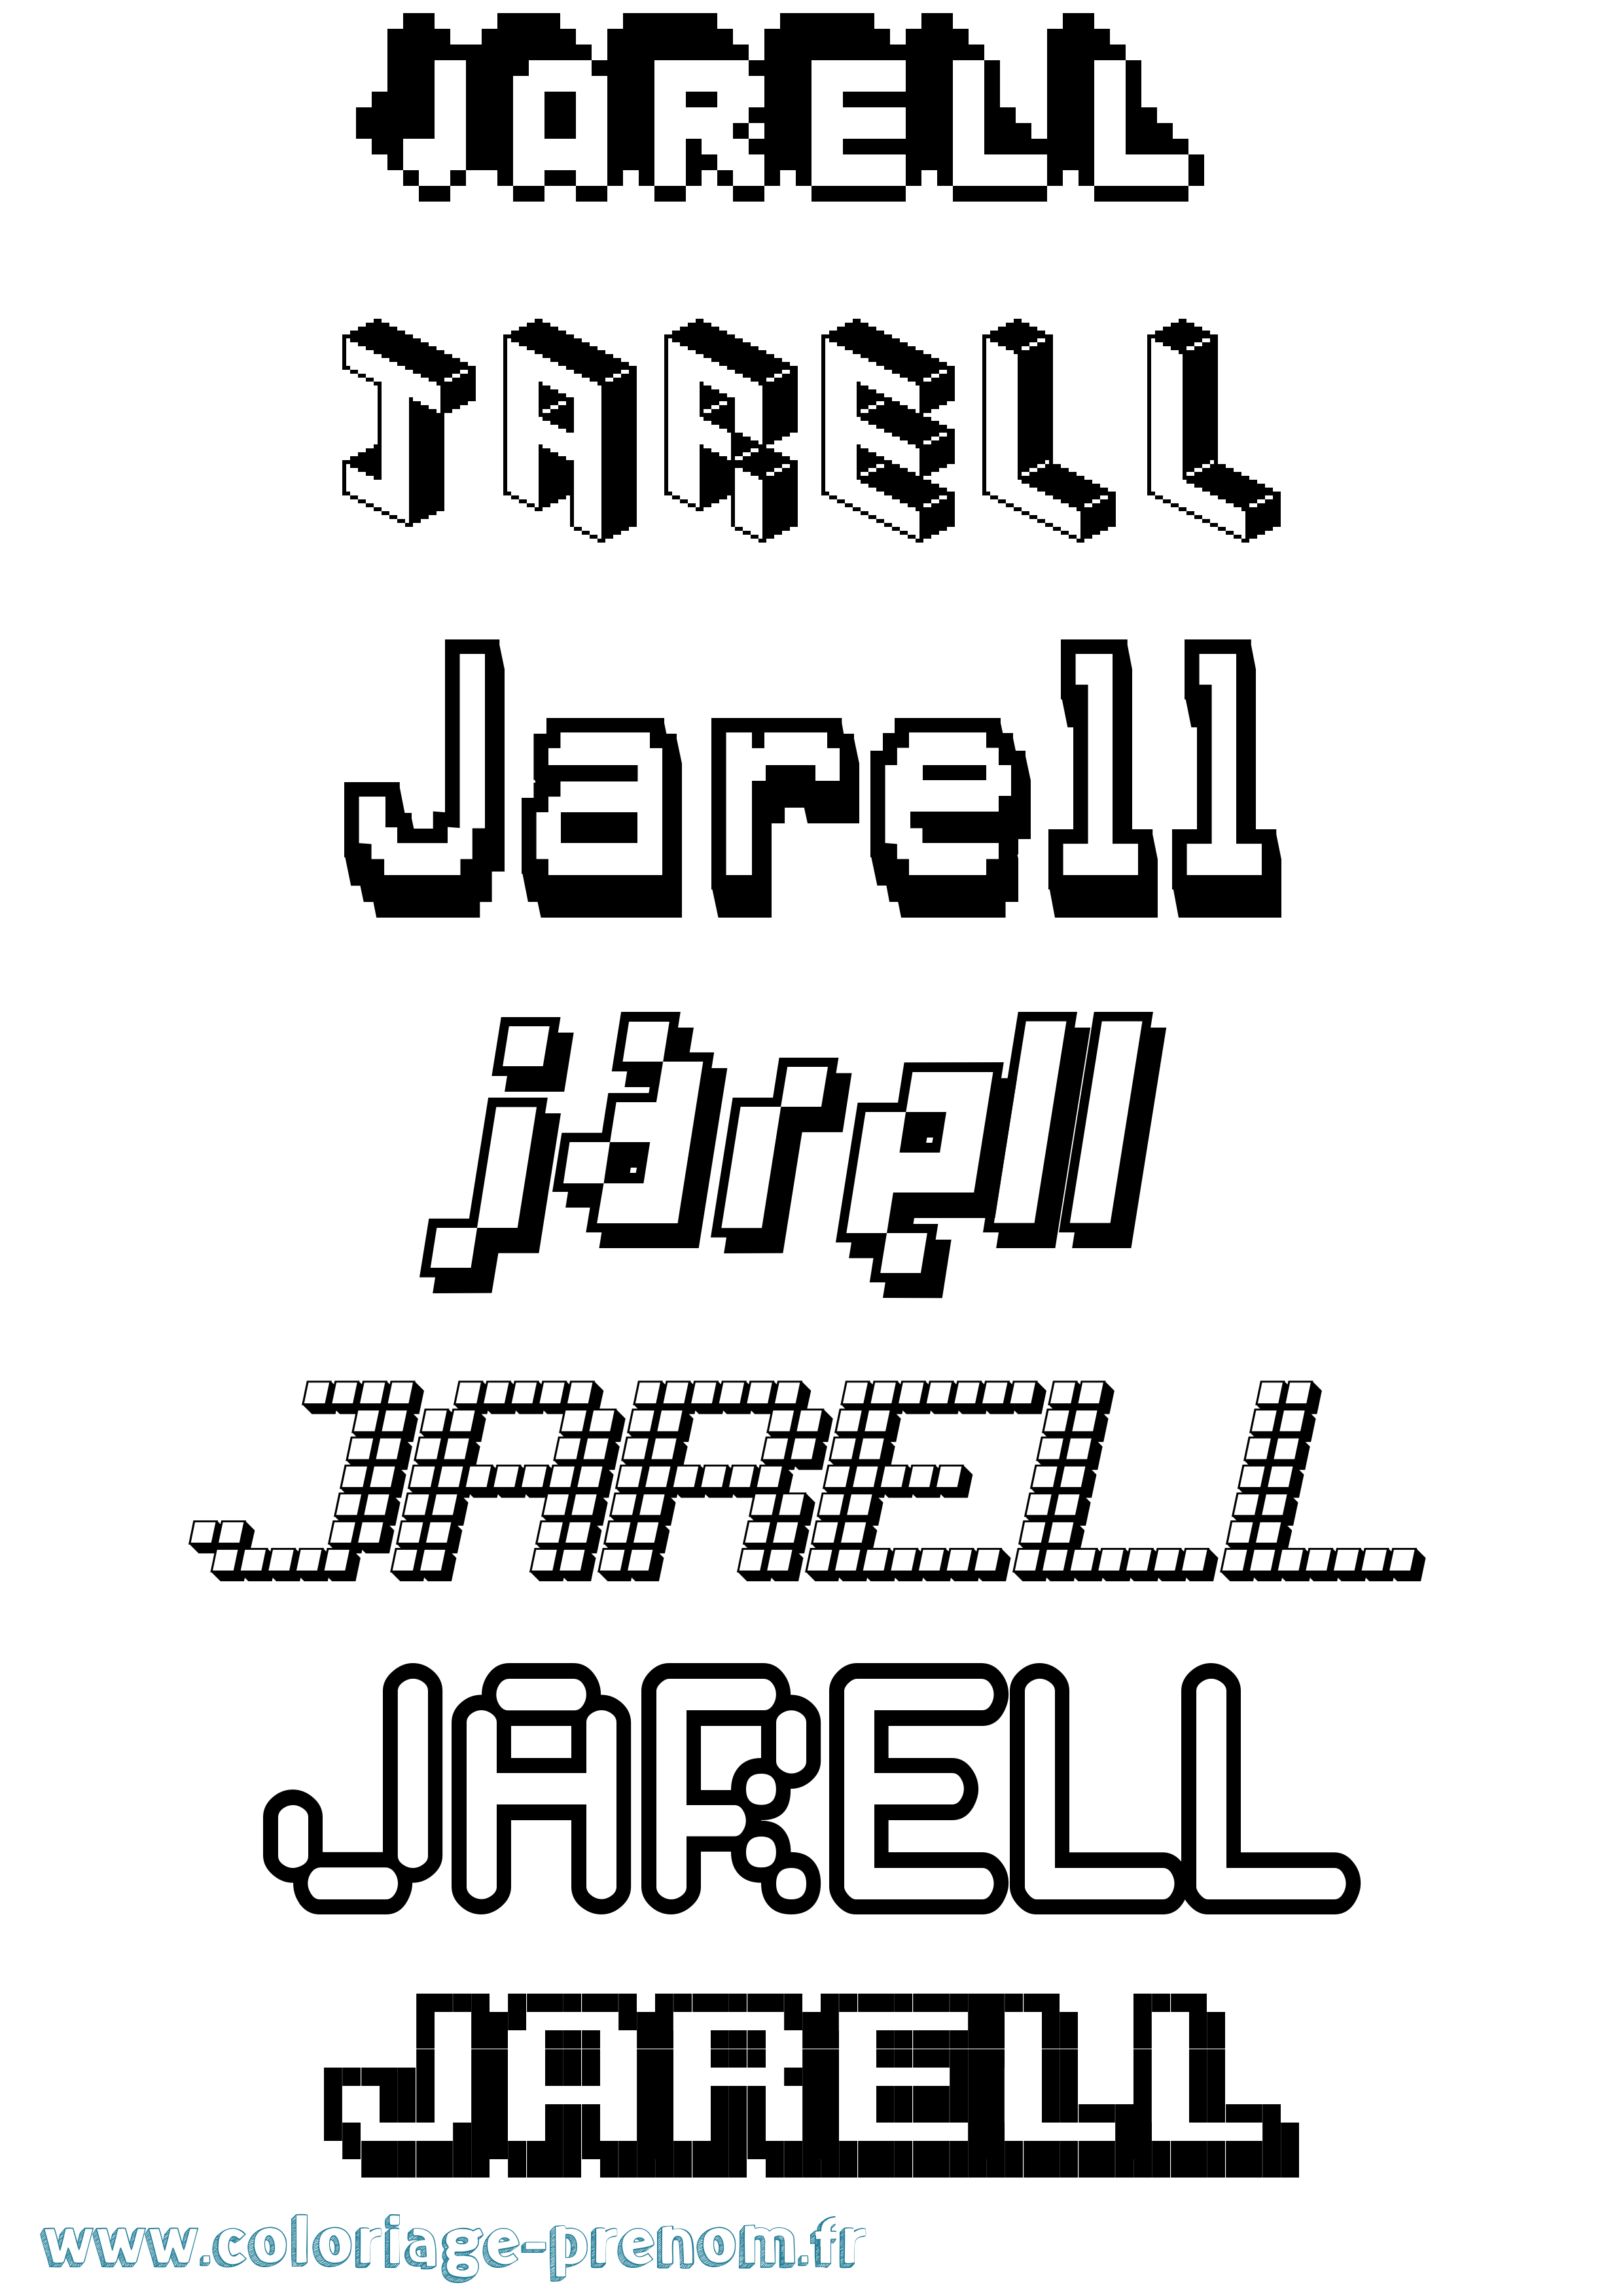 Coloriage prénom Jarell Pixel